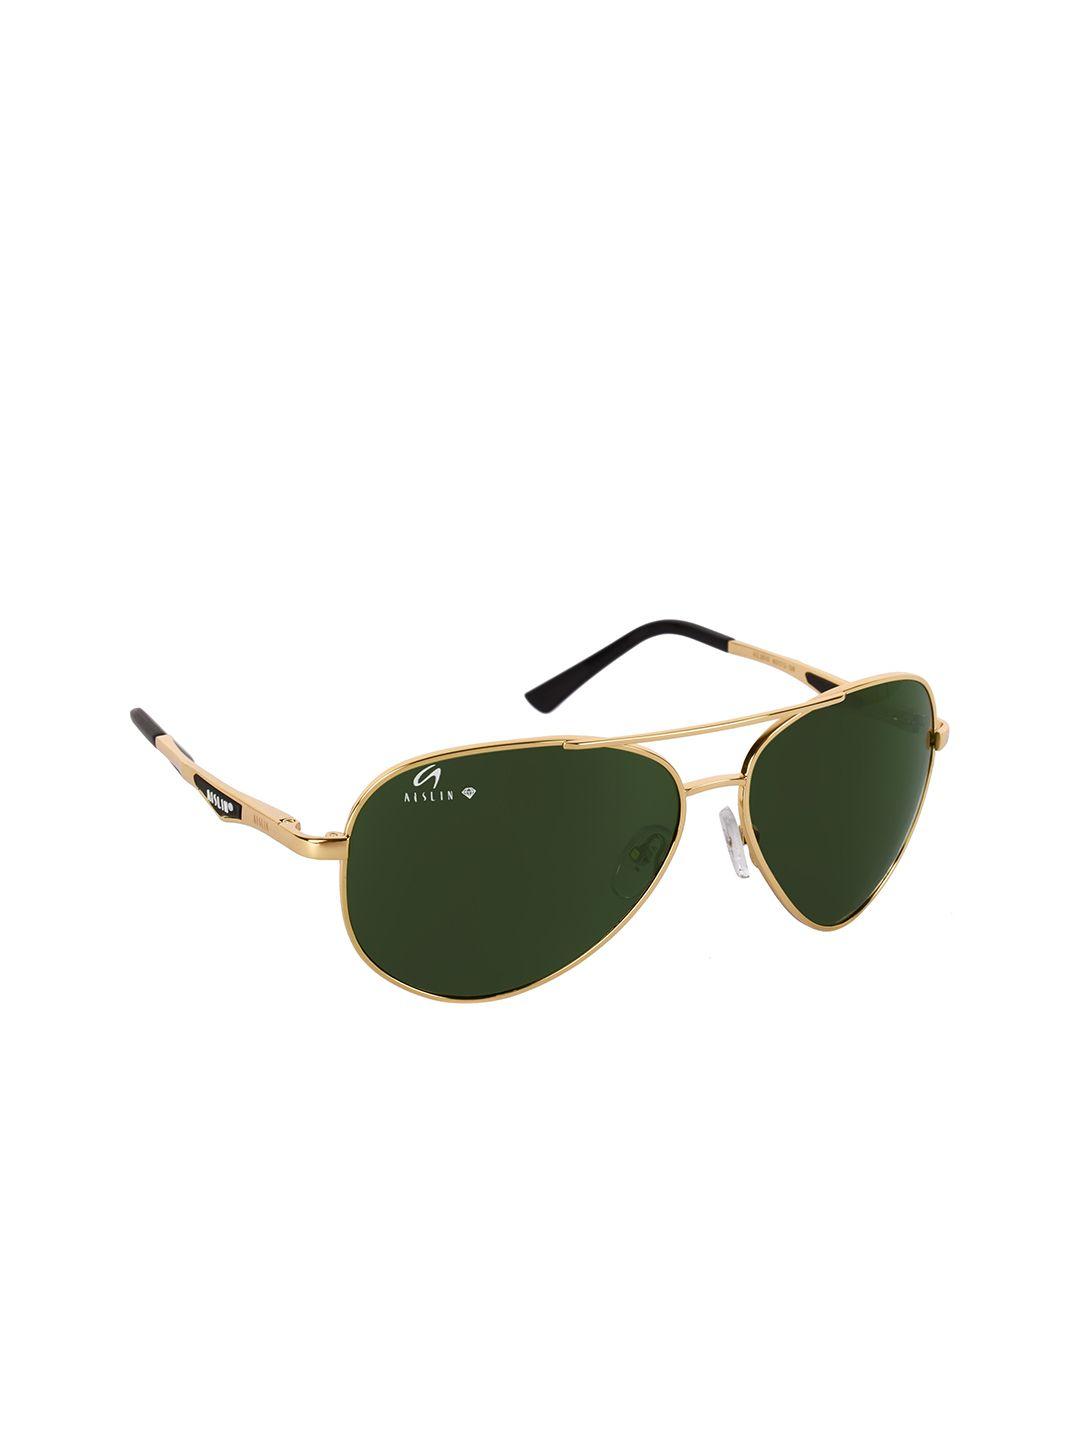 aislin men green full-rim aviator sunglasses